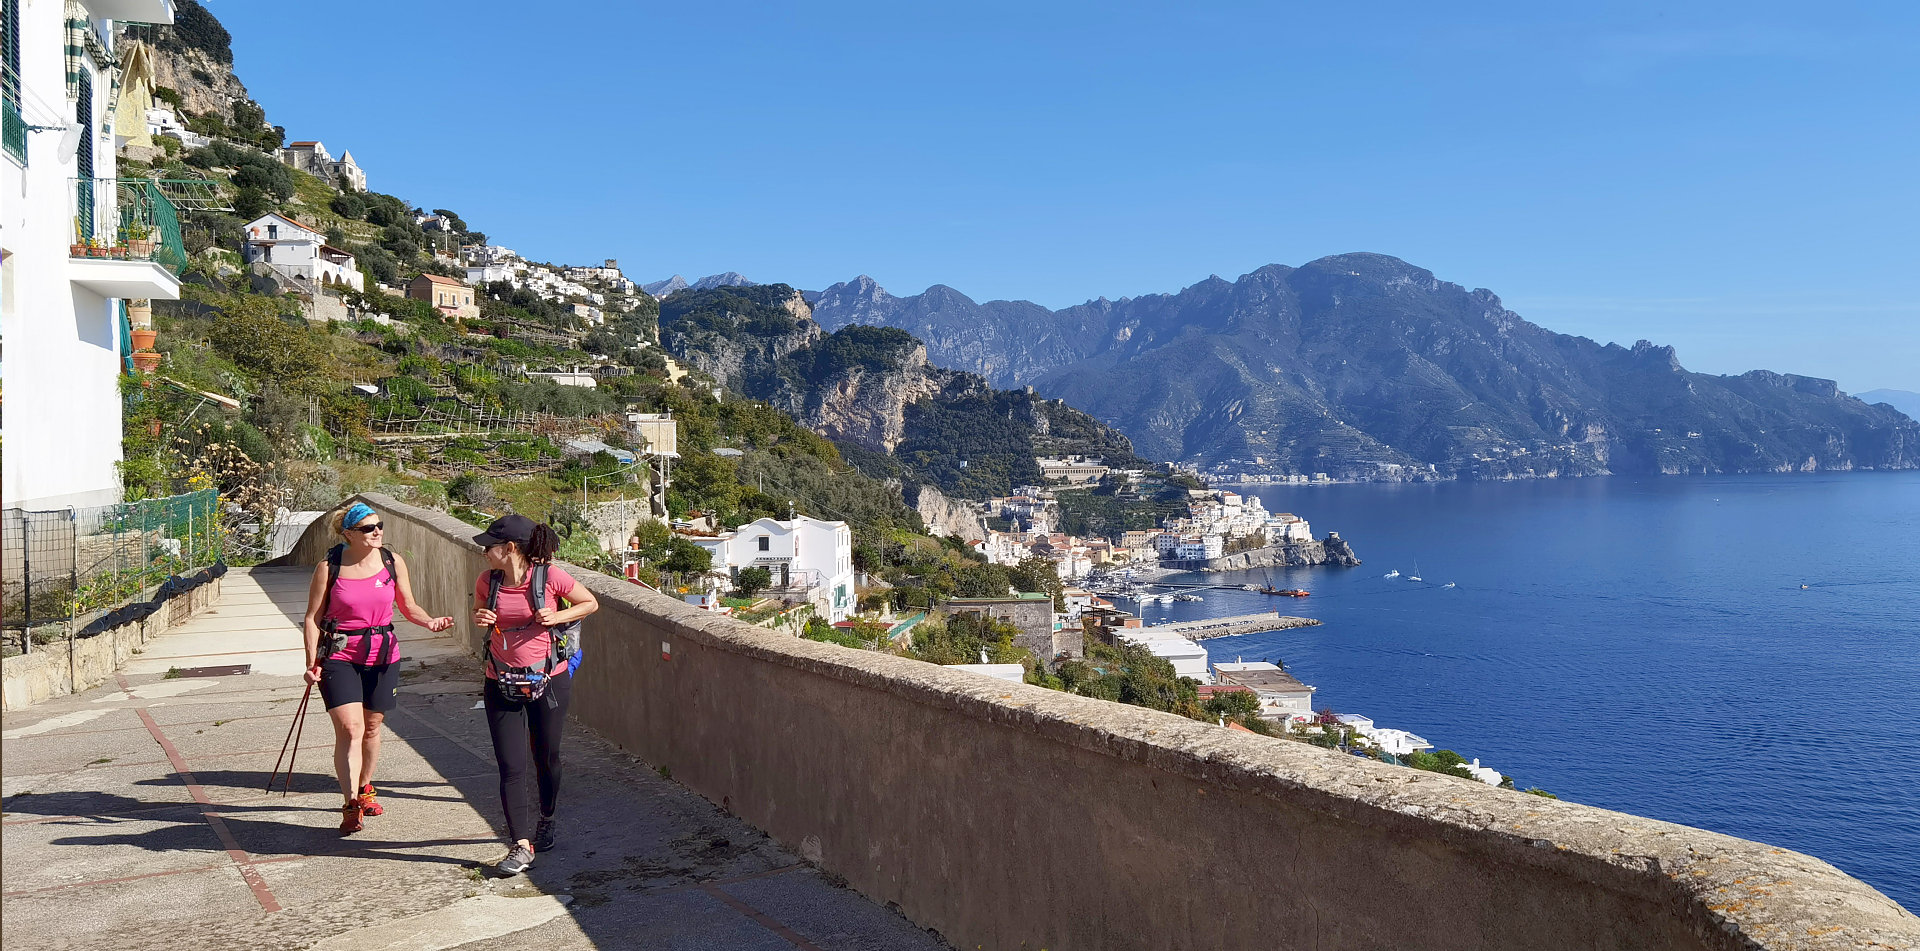 Hiking the Amalfi Coast, enjoy it!